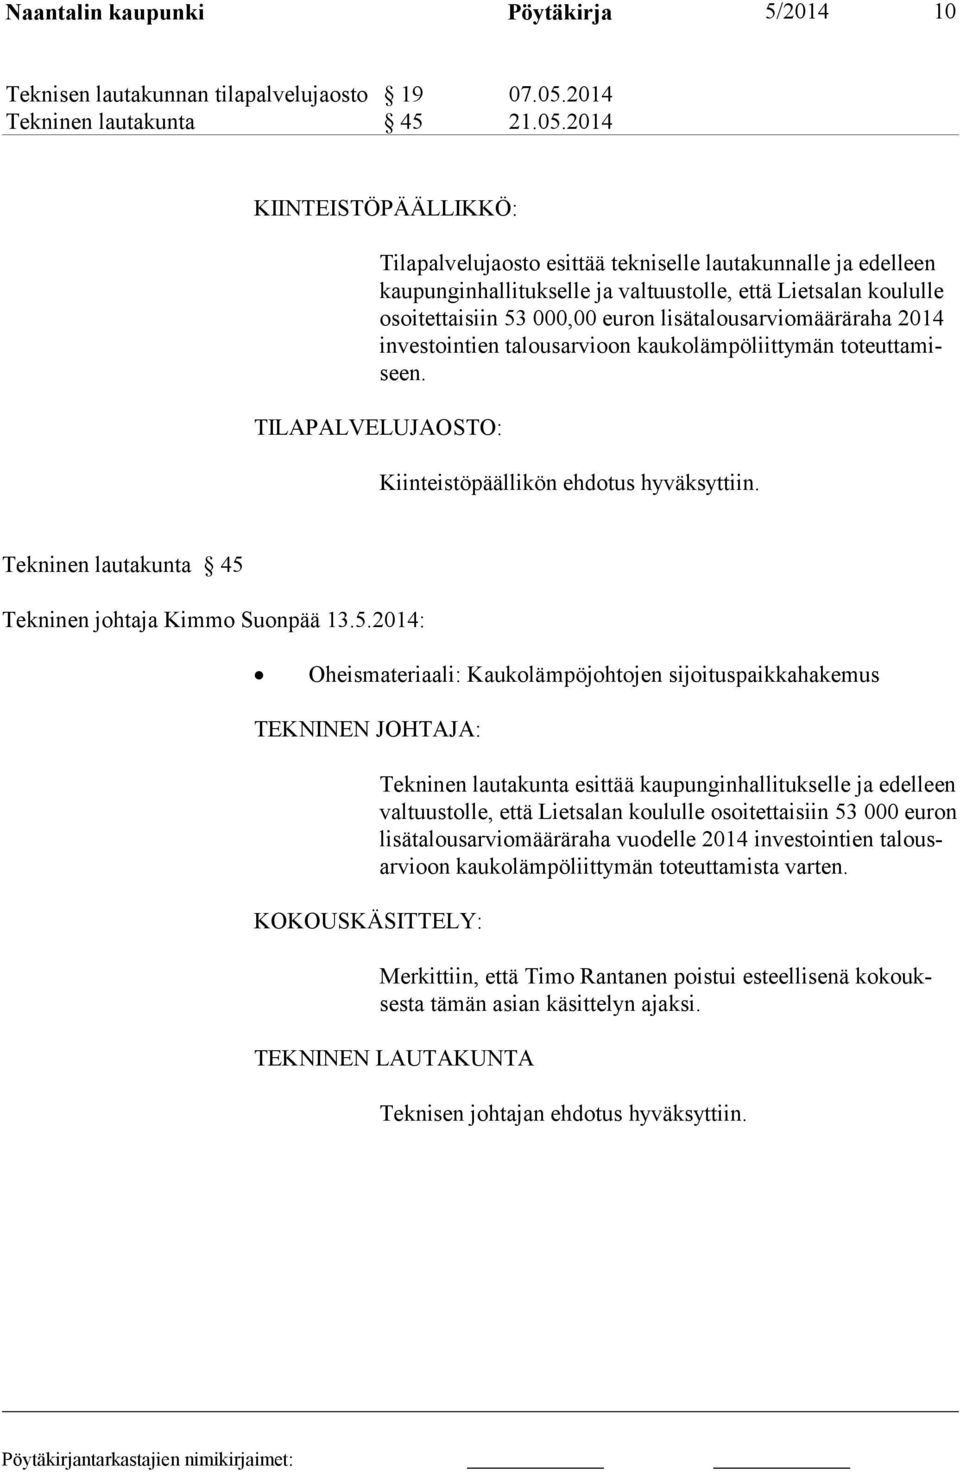 2014 KIINTEISTÖPÄÄLLIKKÖ: Tilapalvelujaosto esittää tekniselle lautakunnalle ja edelleen kaupunginhal litukselle ja valtuustolle, että Lietsalan koululle osoitettaisiin 53 000,00 euron